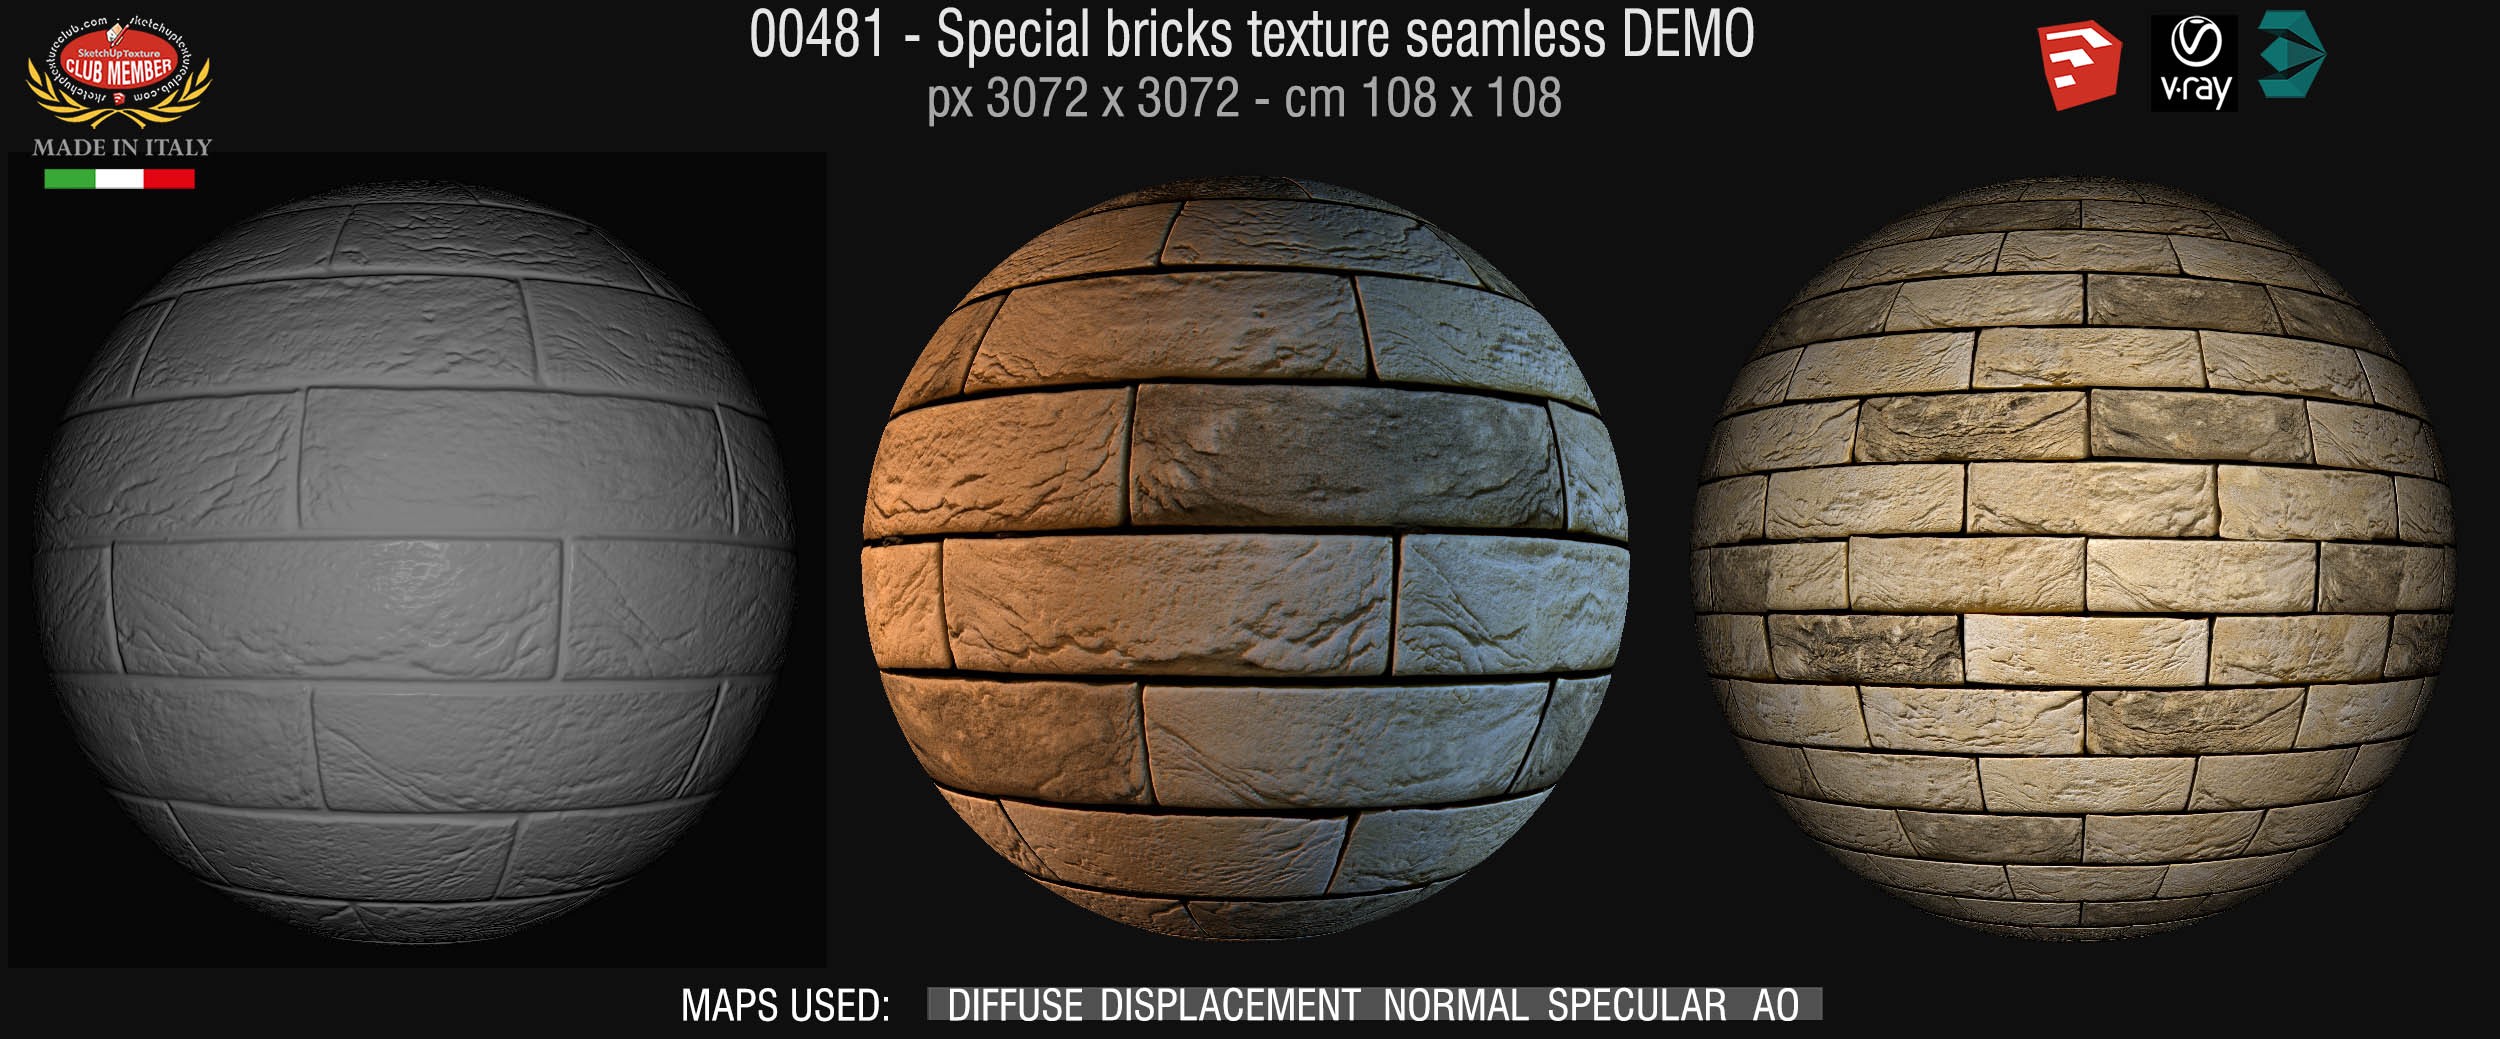 00481 Special bricks texture seamless + maps DEMO